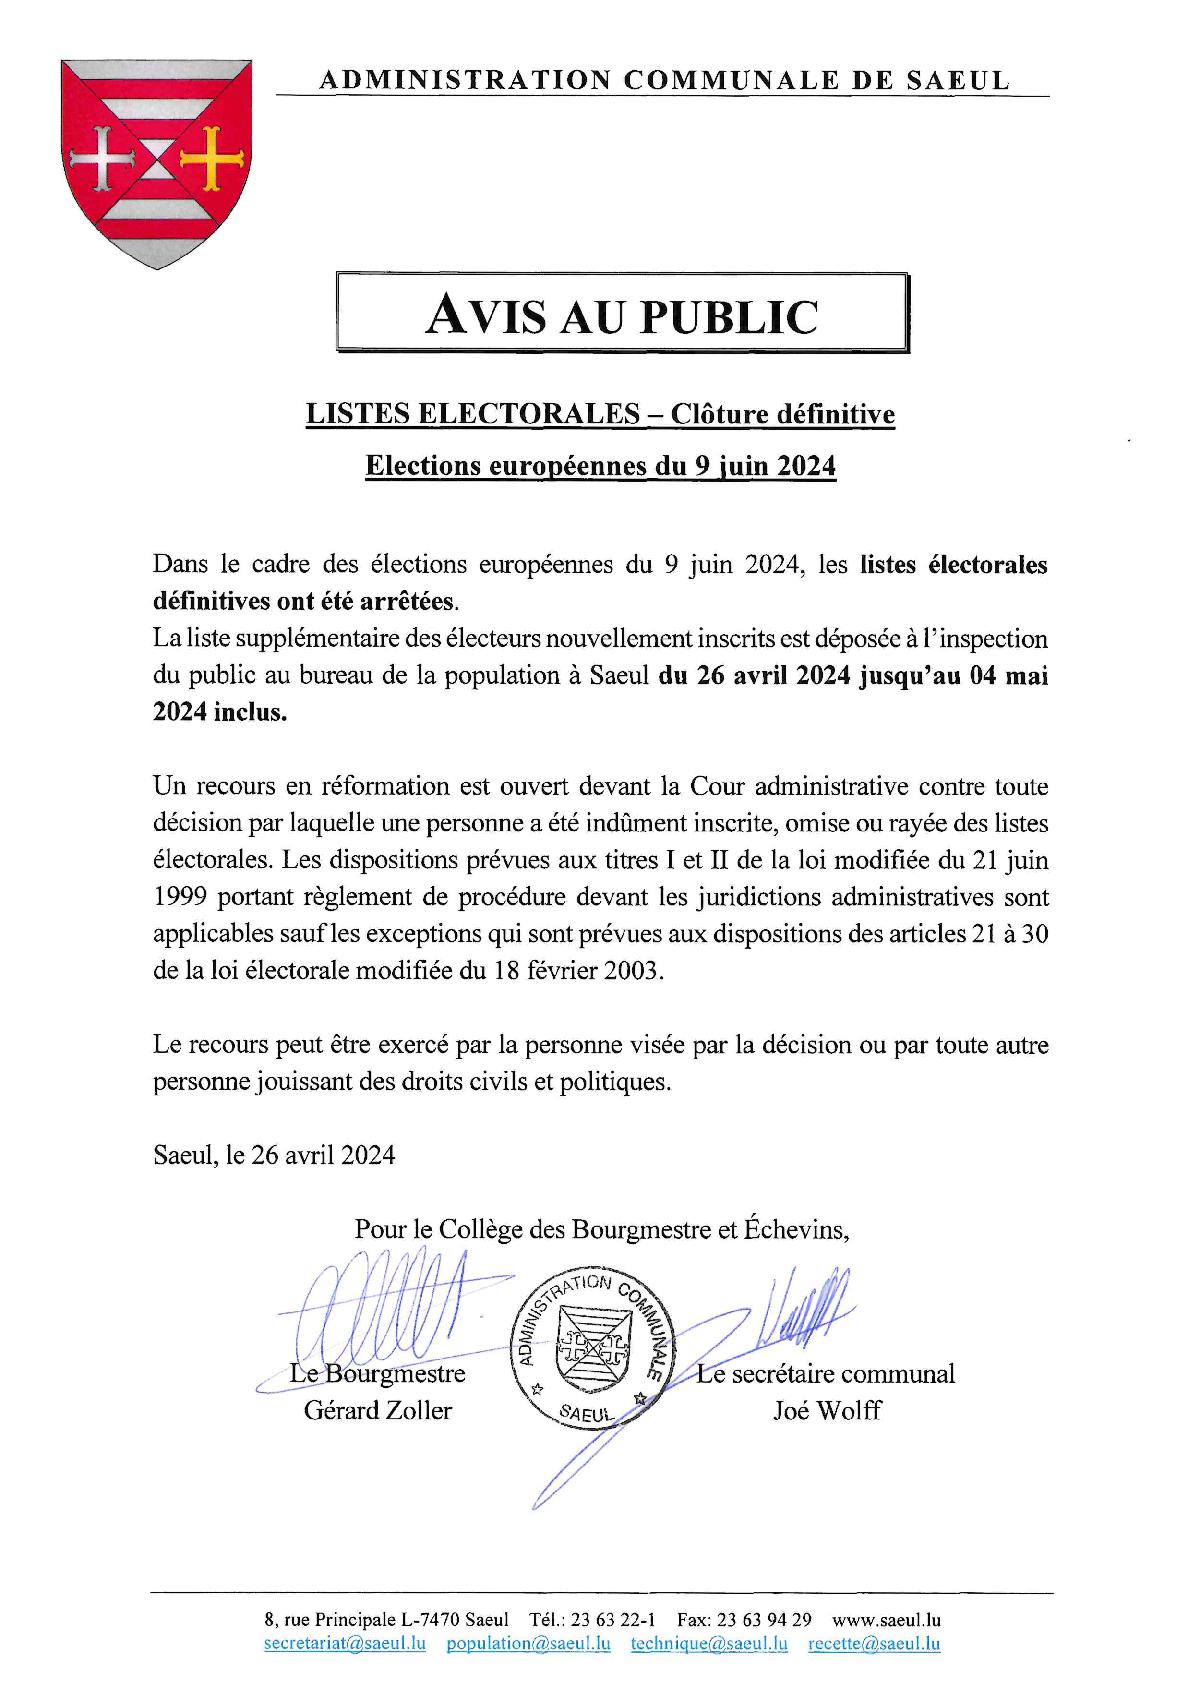 AVIS AU PUBLIC | Élections européennes – Listes électorales définitives arrêtées